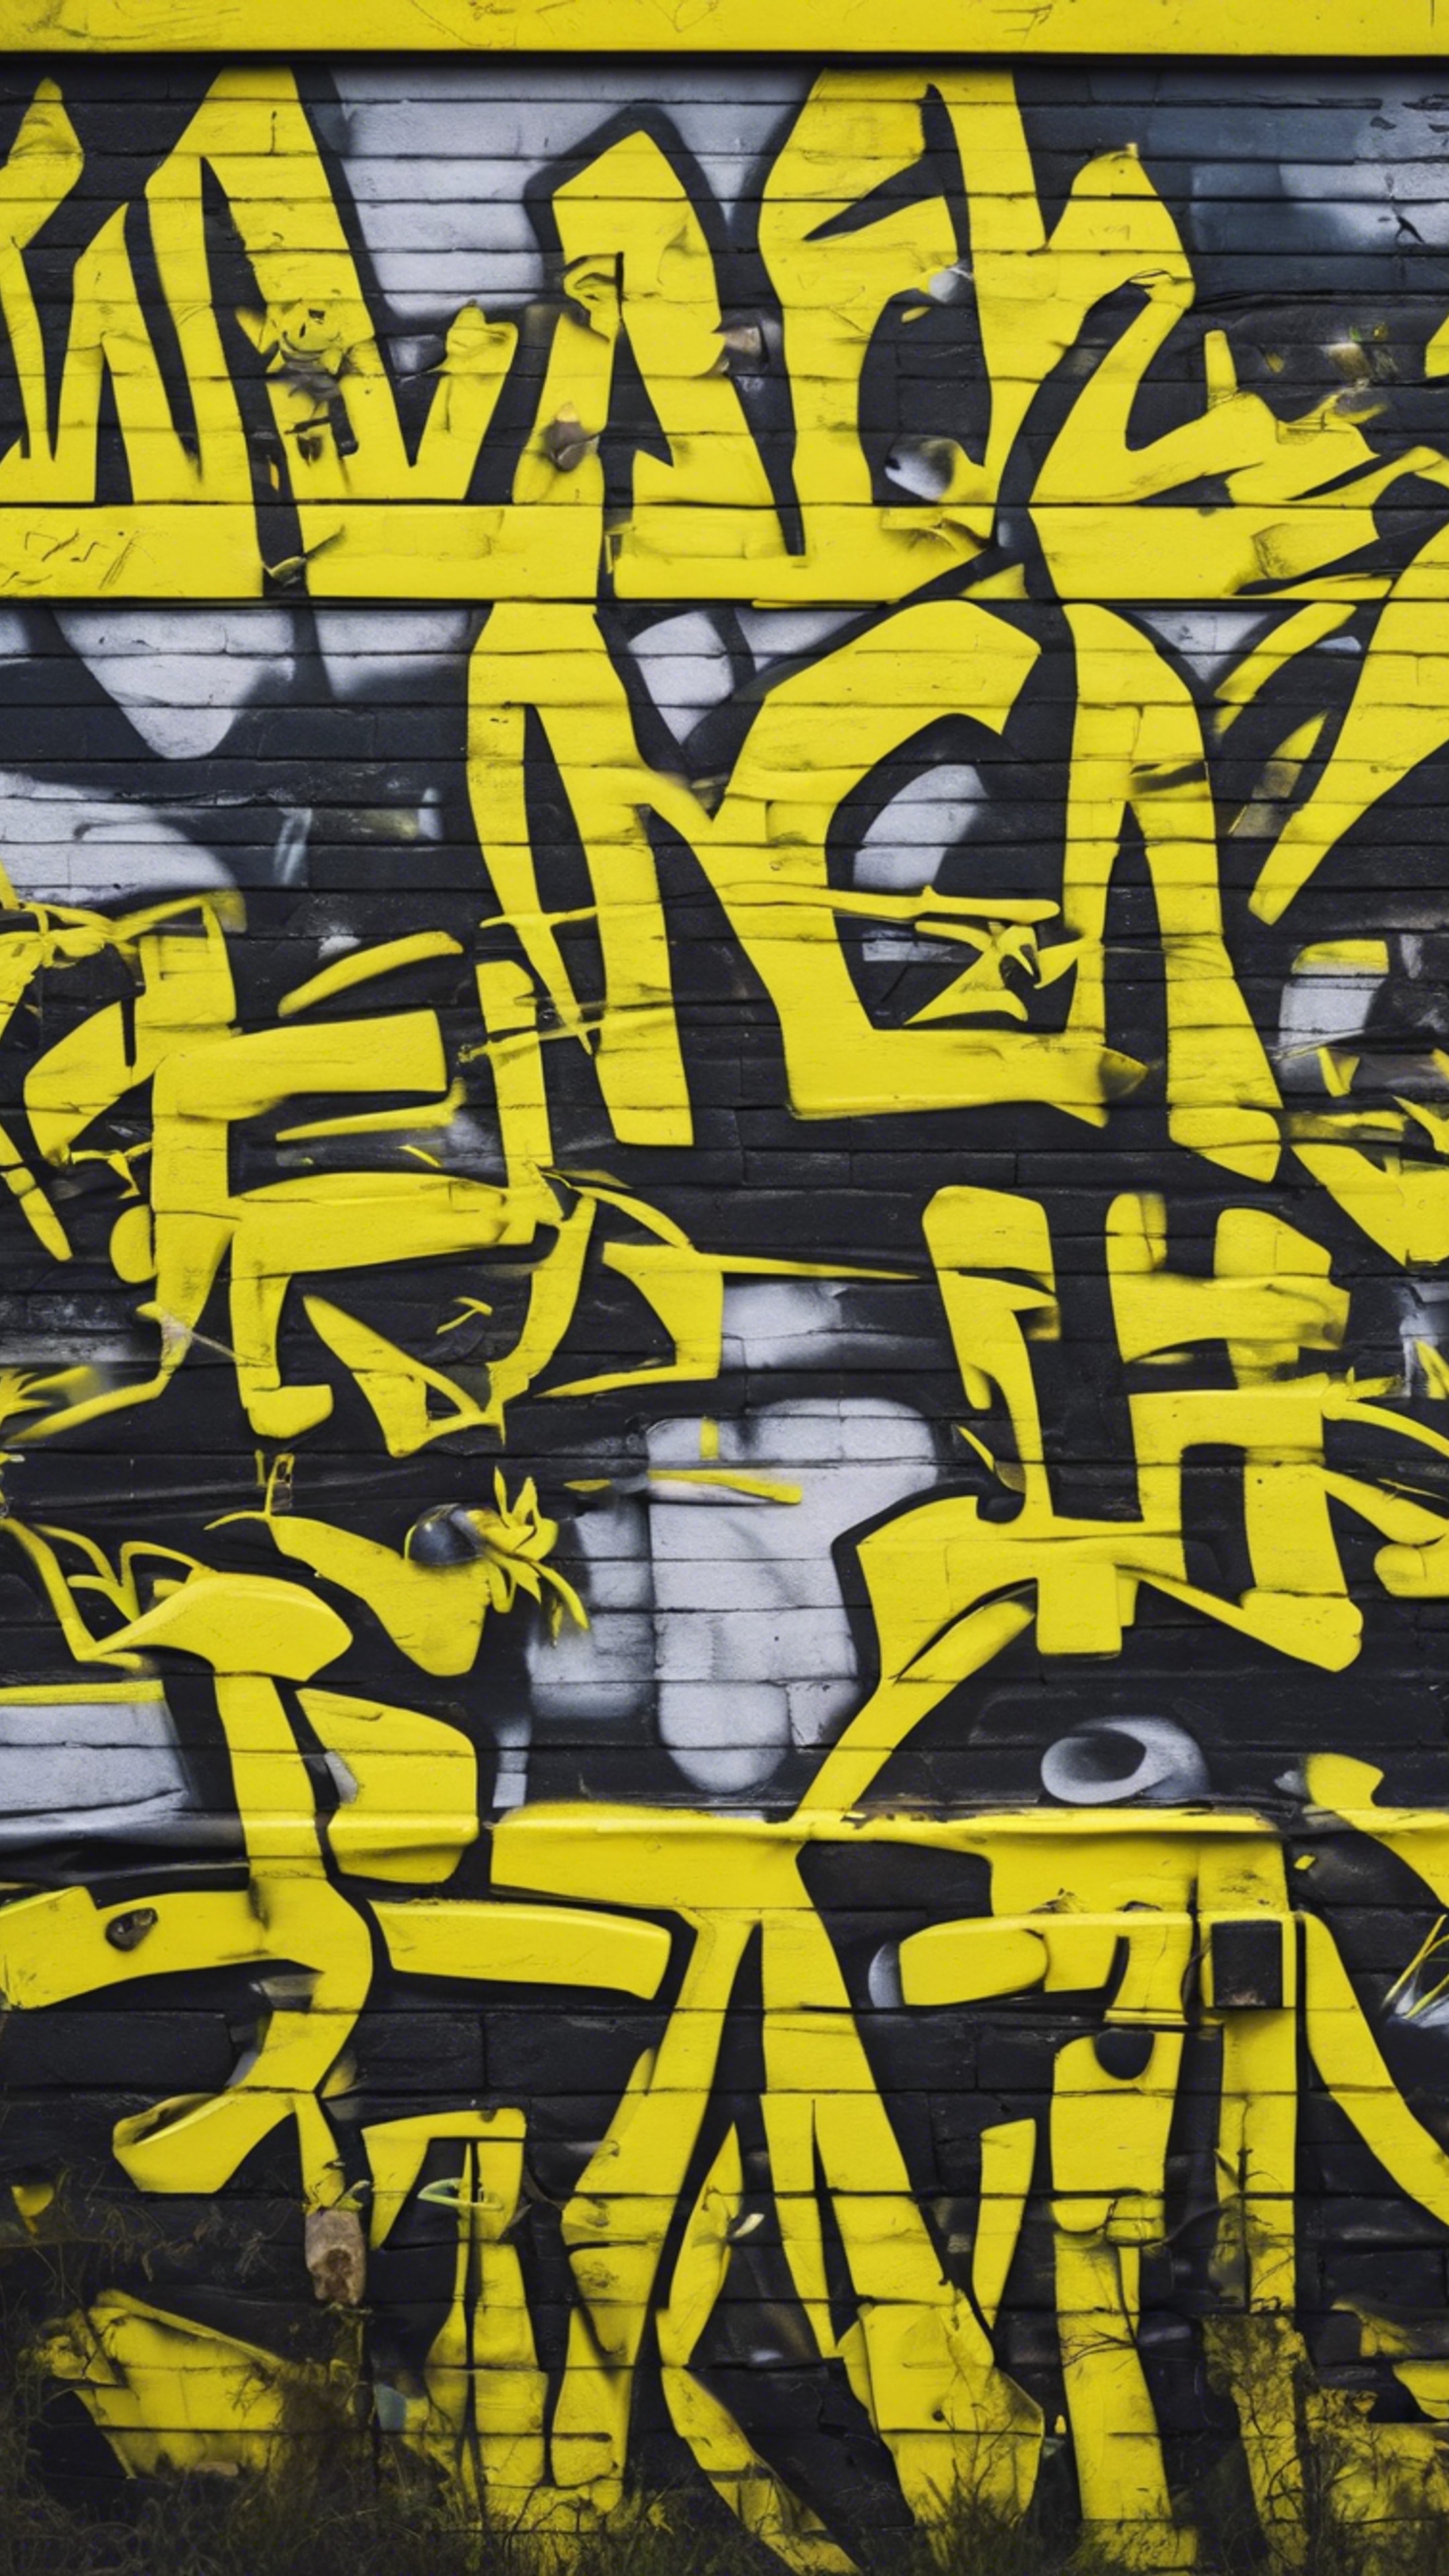 An urban graffiti wall consisting of wild neon yellow graphics. Papel de parede[c33d158e57ea4e1b8c8e]